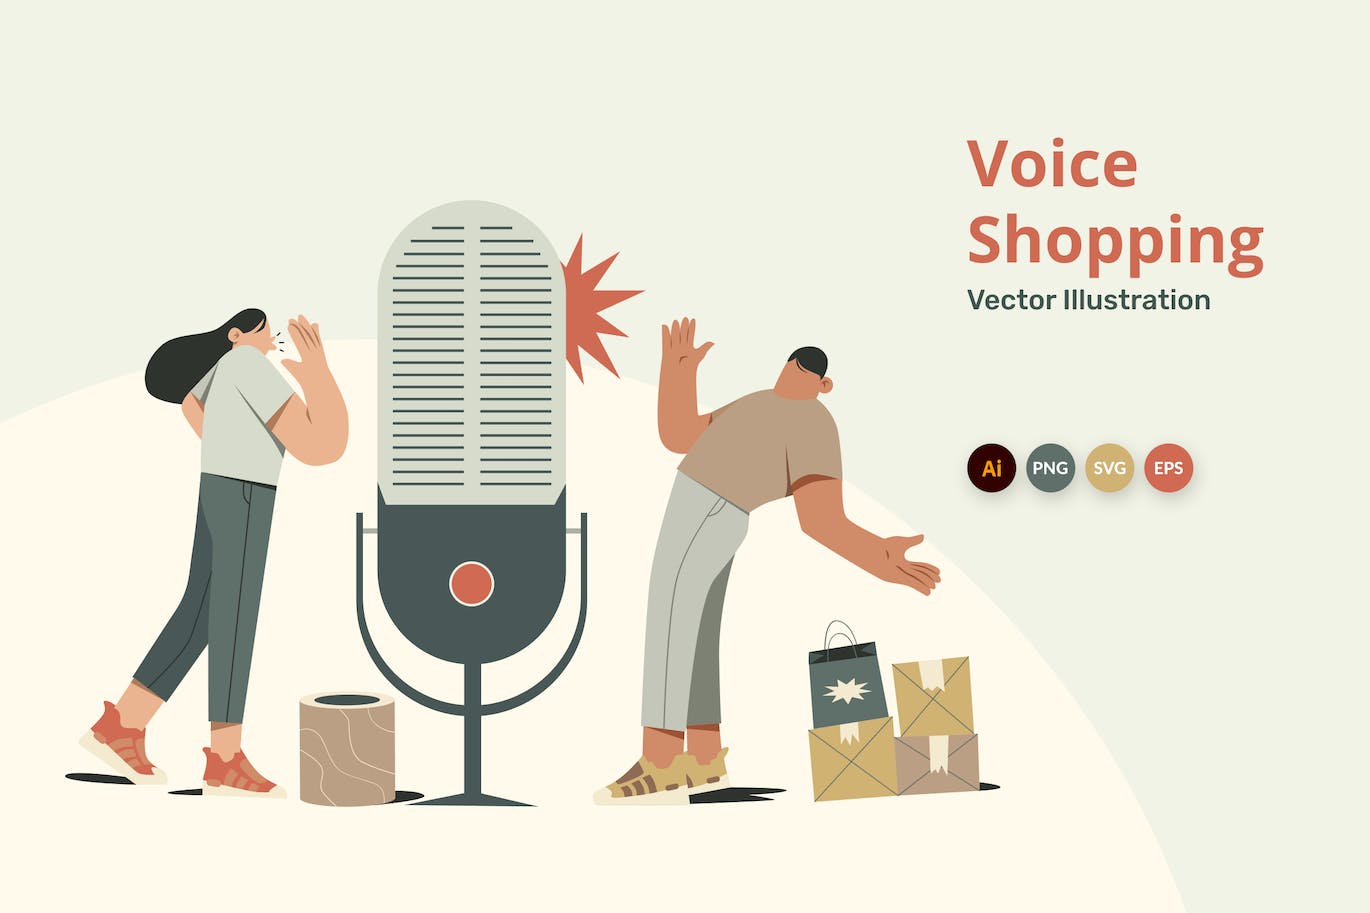 语音助手购物插画 Voice Assistant Illustration-1